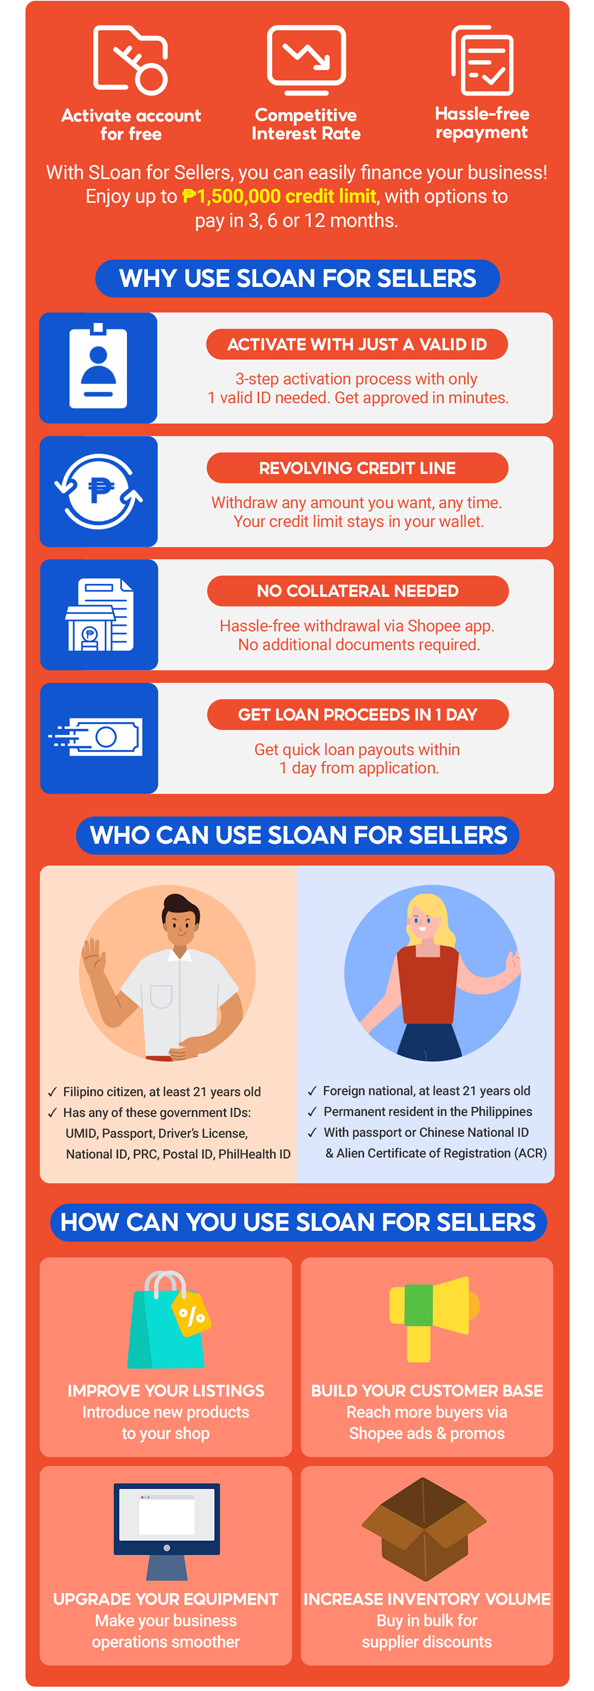 SLoan for Sellers November 2022 | Shopee PH